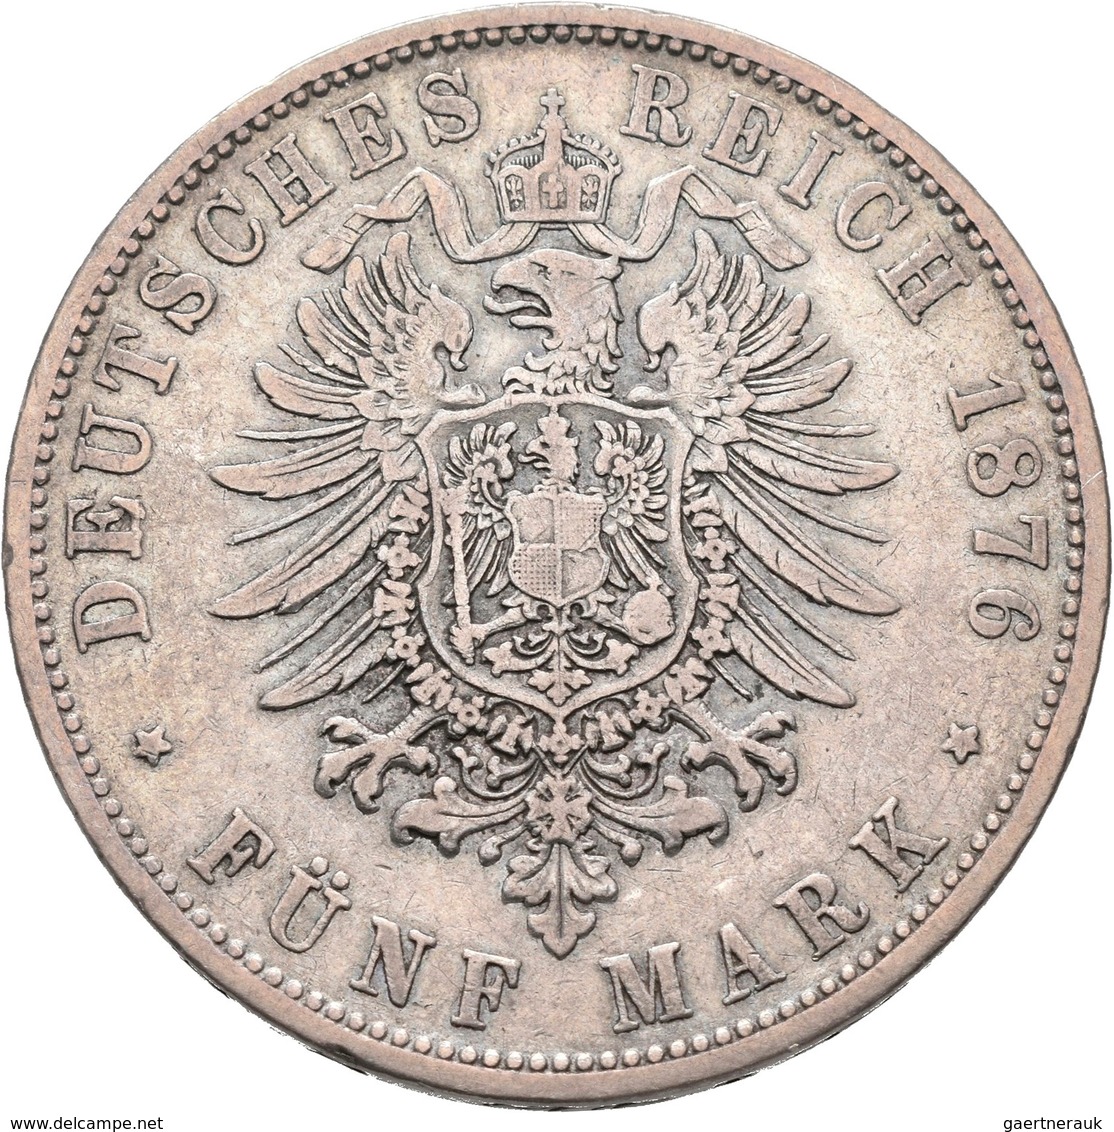 Deutsches Kaiserreich: Lot 4 Stück; Bayern 5 Mark 1904, Preußen 5 Mark 1876, 5 Mark 1907, 5 Mark 191